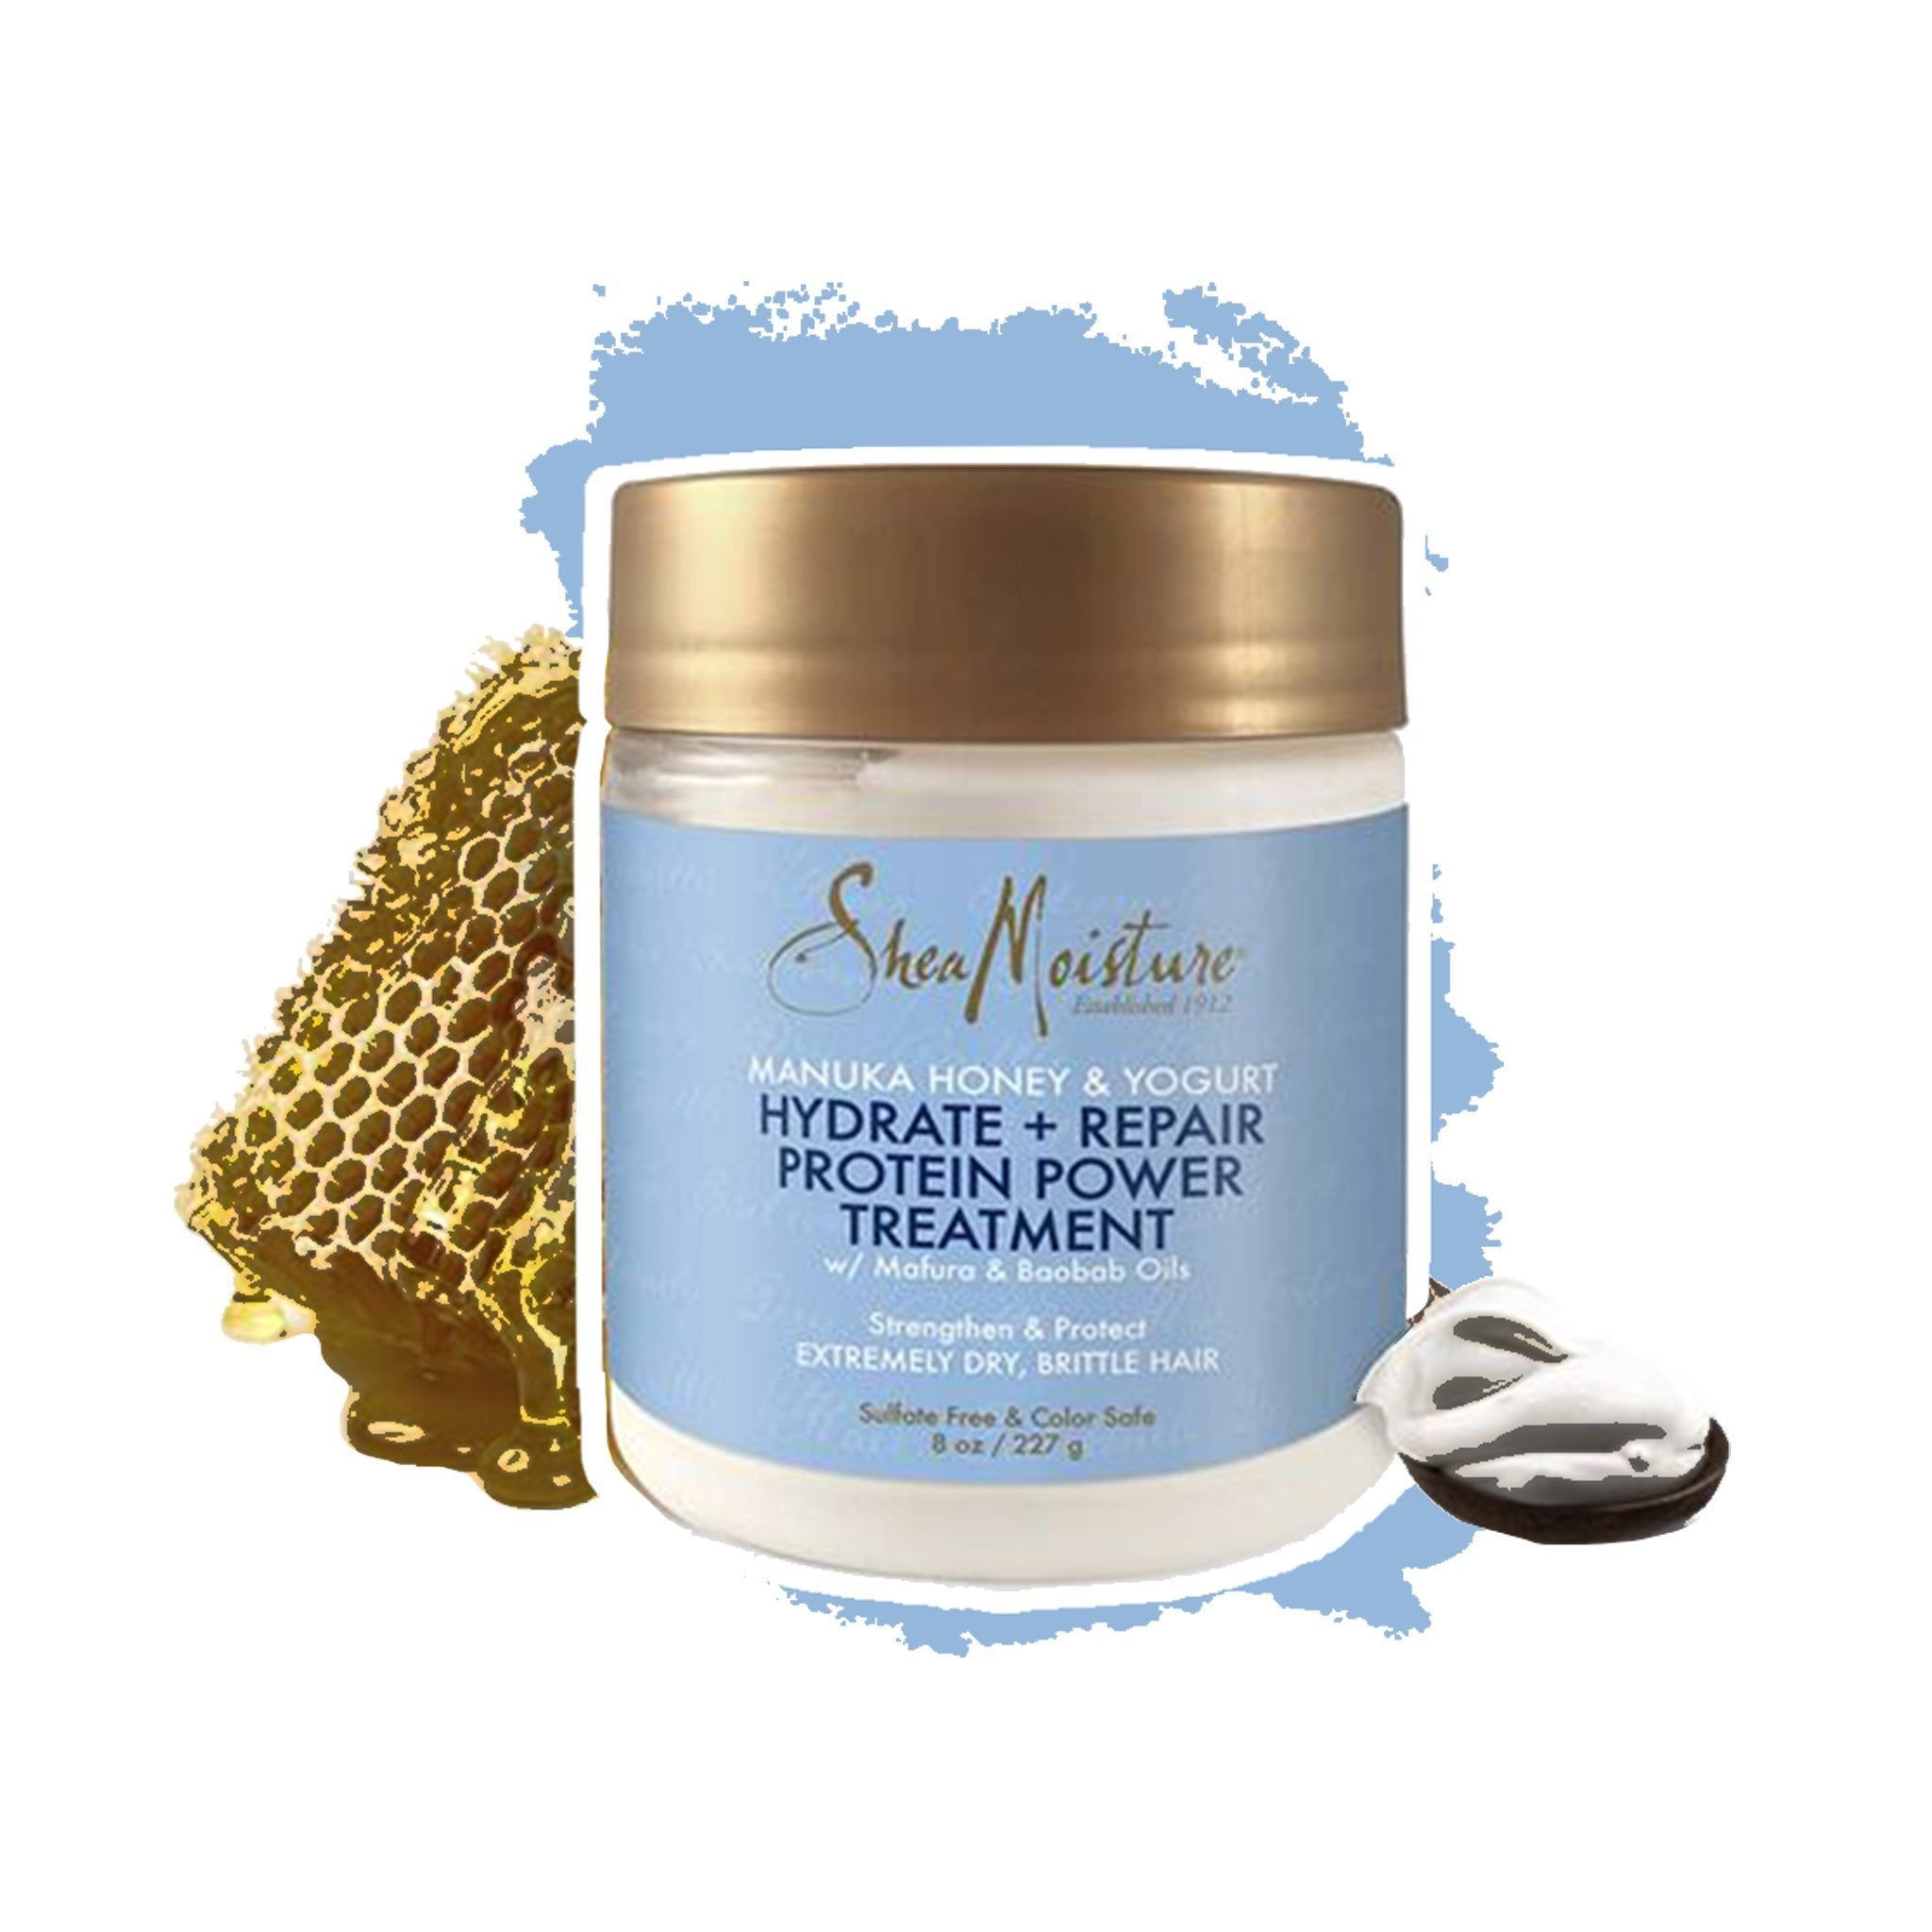 Shea Moisture | Manuka Honey & Yogurt Hydrate + Repair Protein Power Treatment - lockenkopf